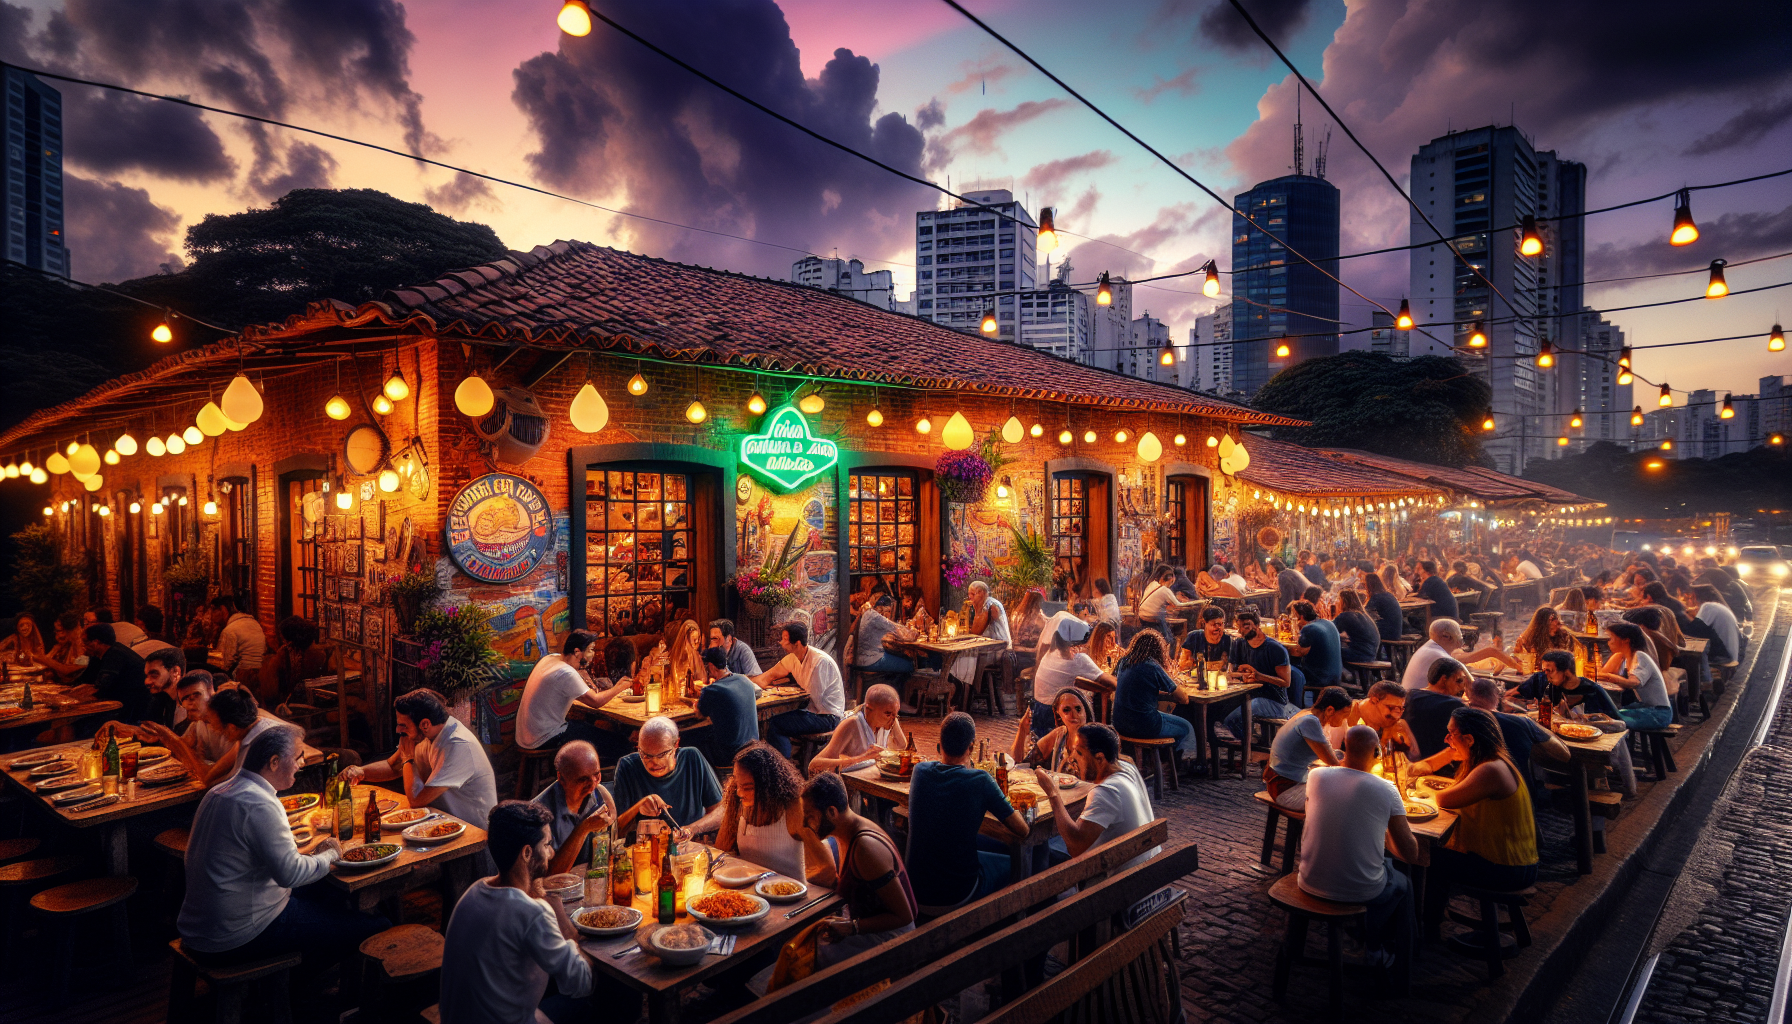 Descubra o Melhor Restaurante em São Paulo: Guia Gastronómico Completo